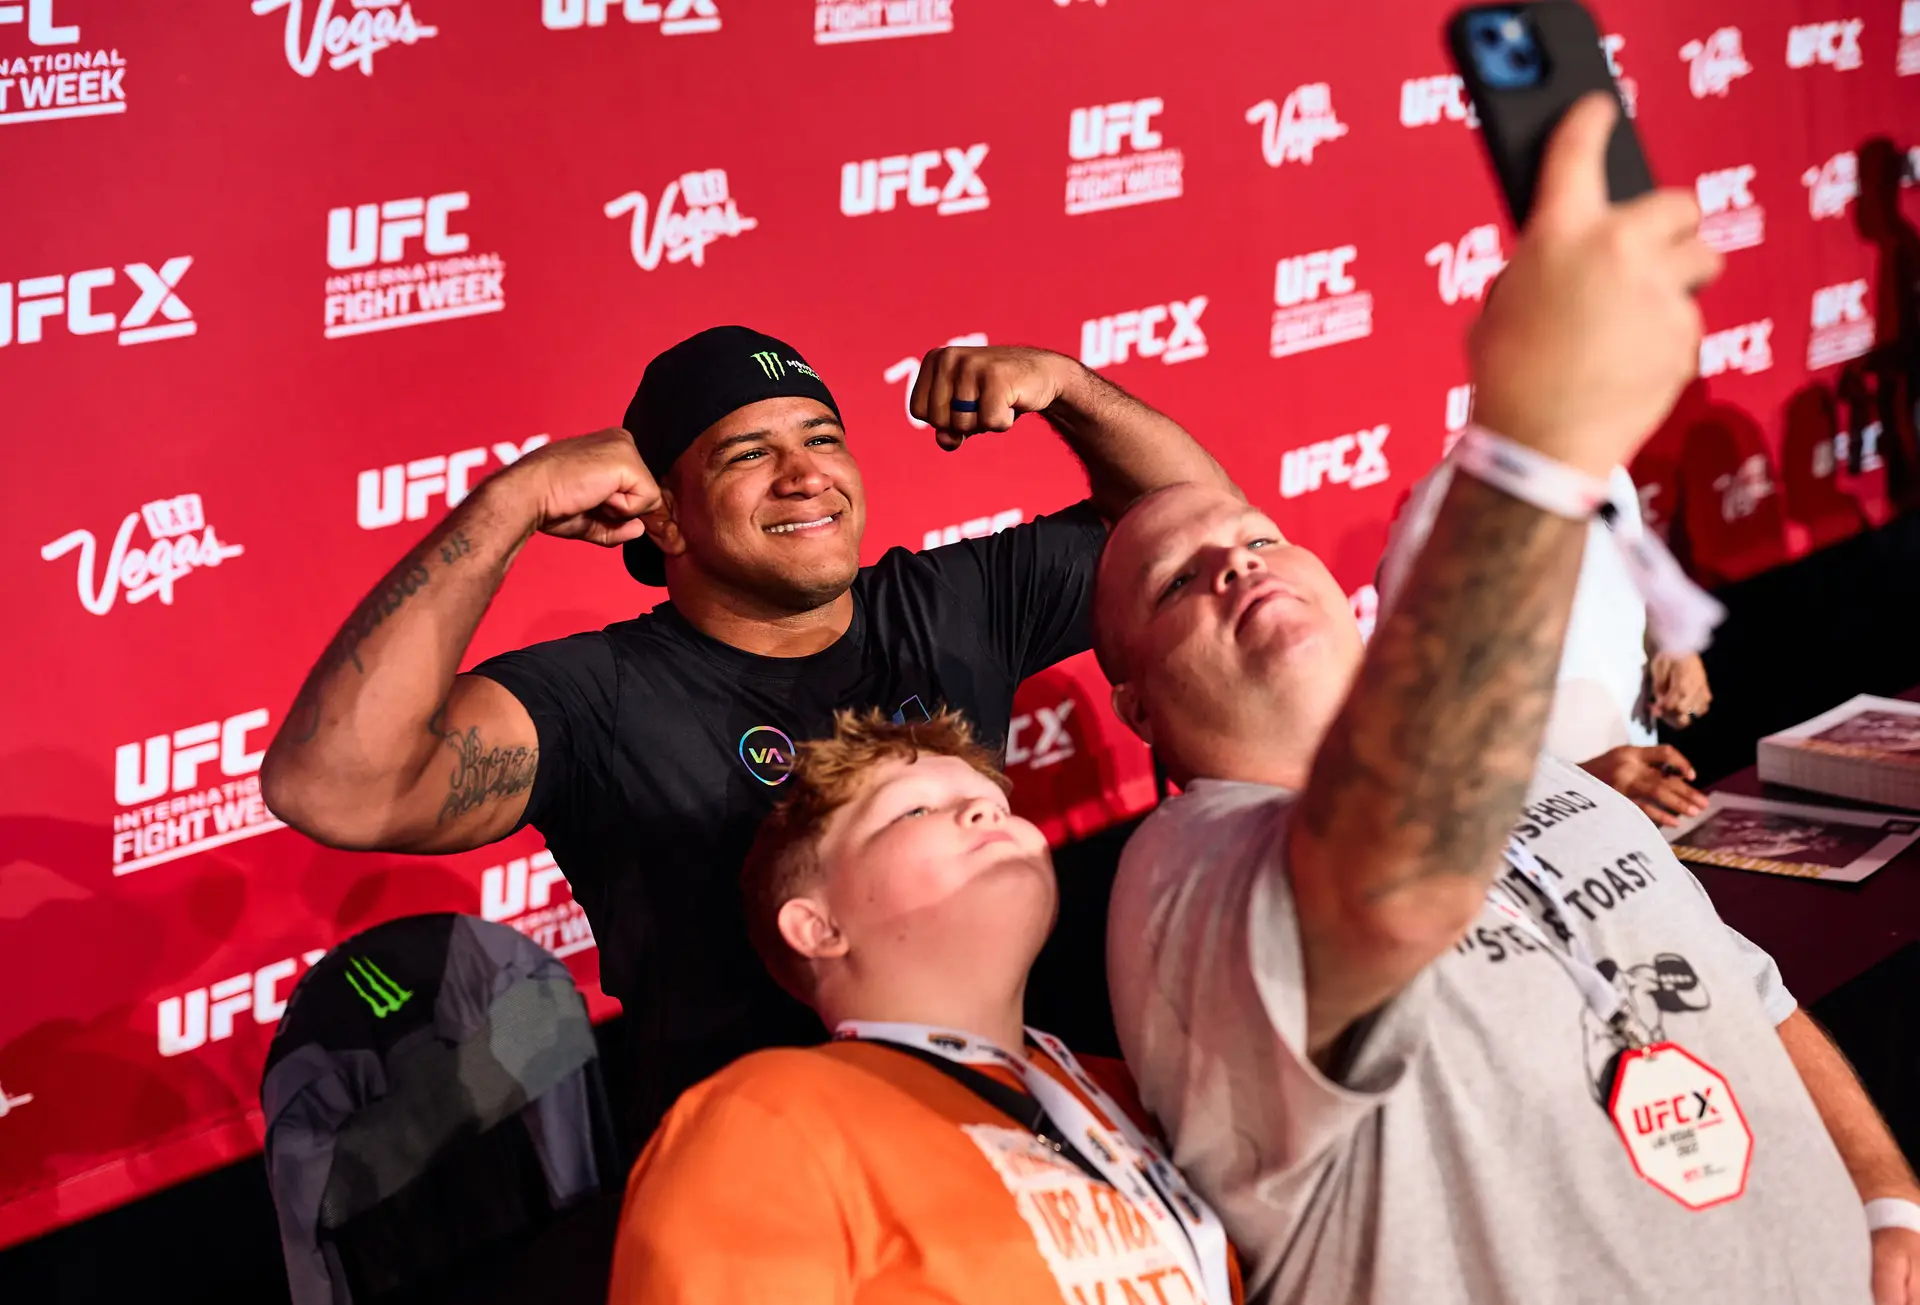 Em Las Vegas, no mundo do UFC, fala-se português “Eu digo ao Fialho que é muito inteligente e técnico foto